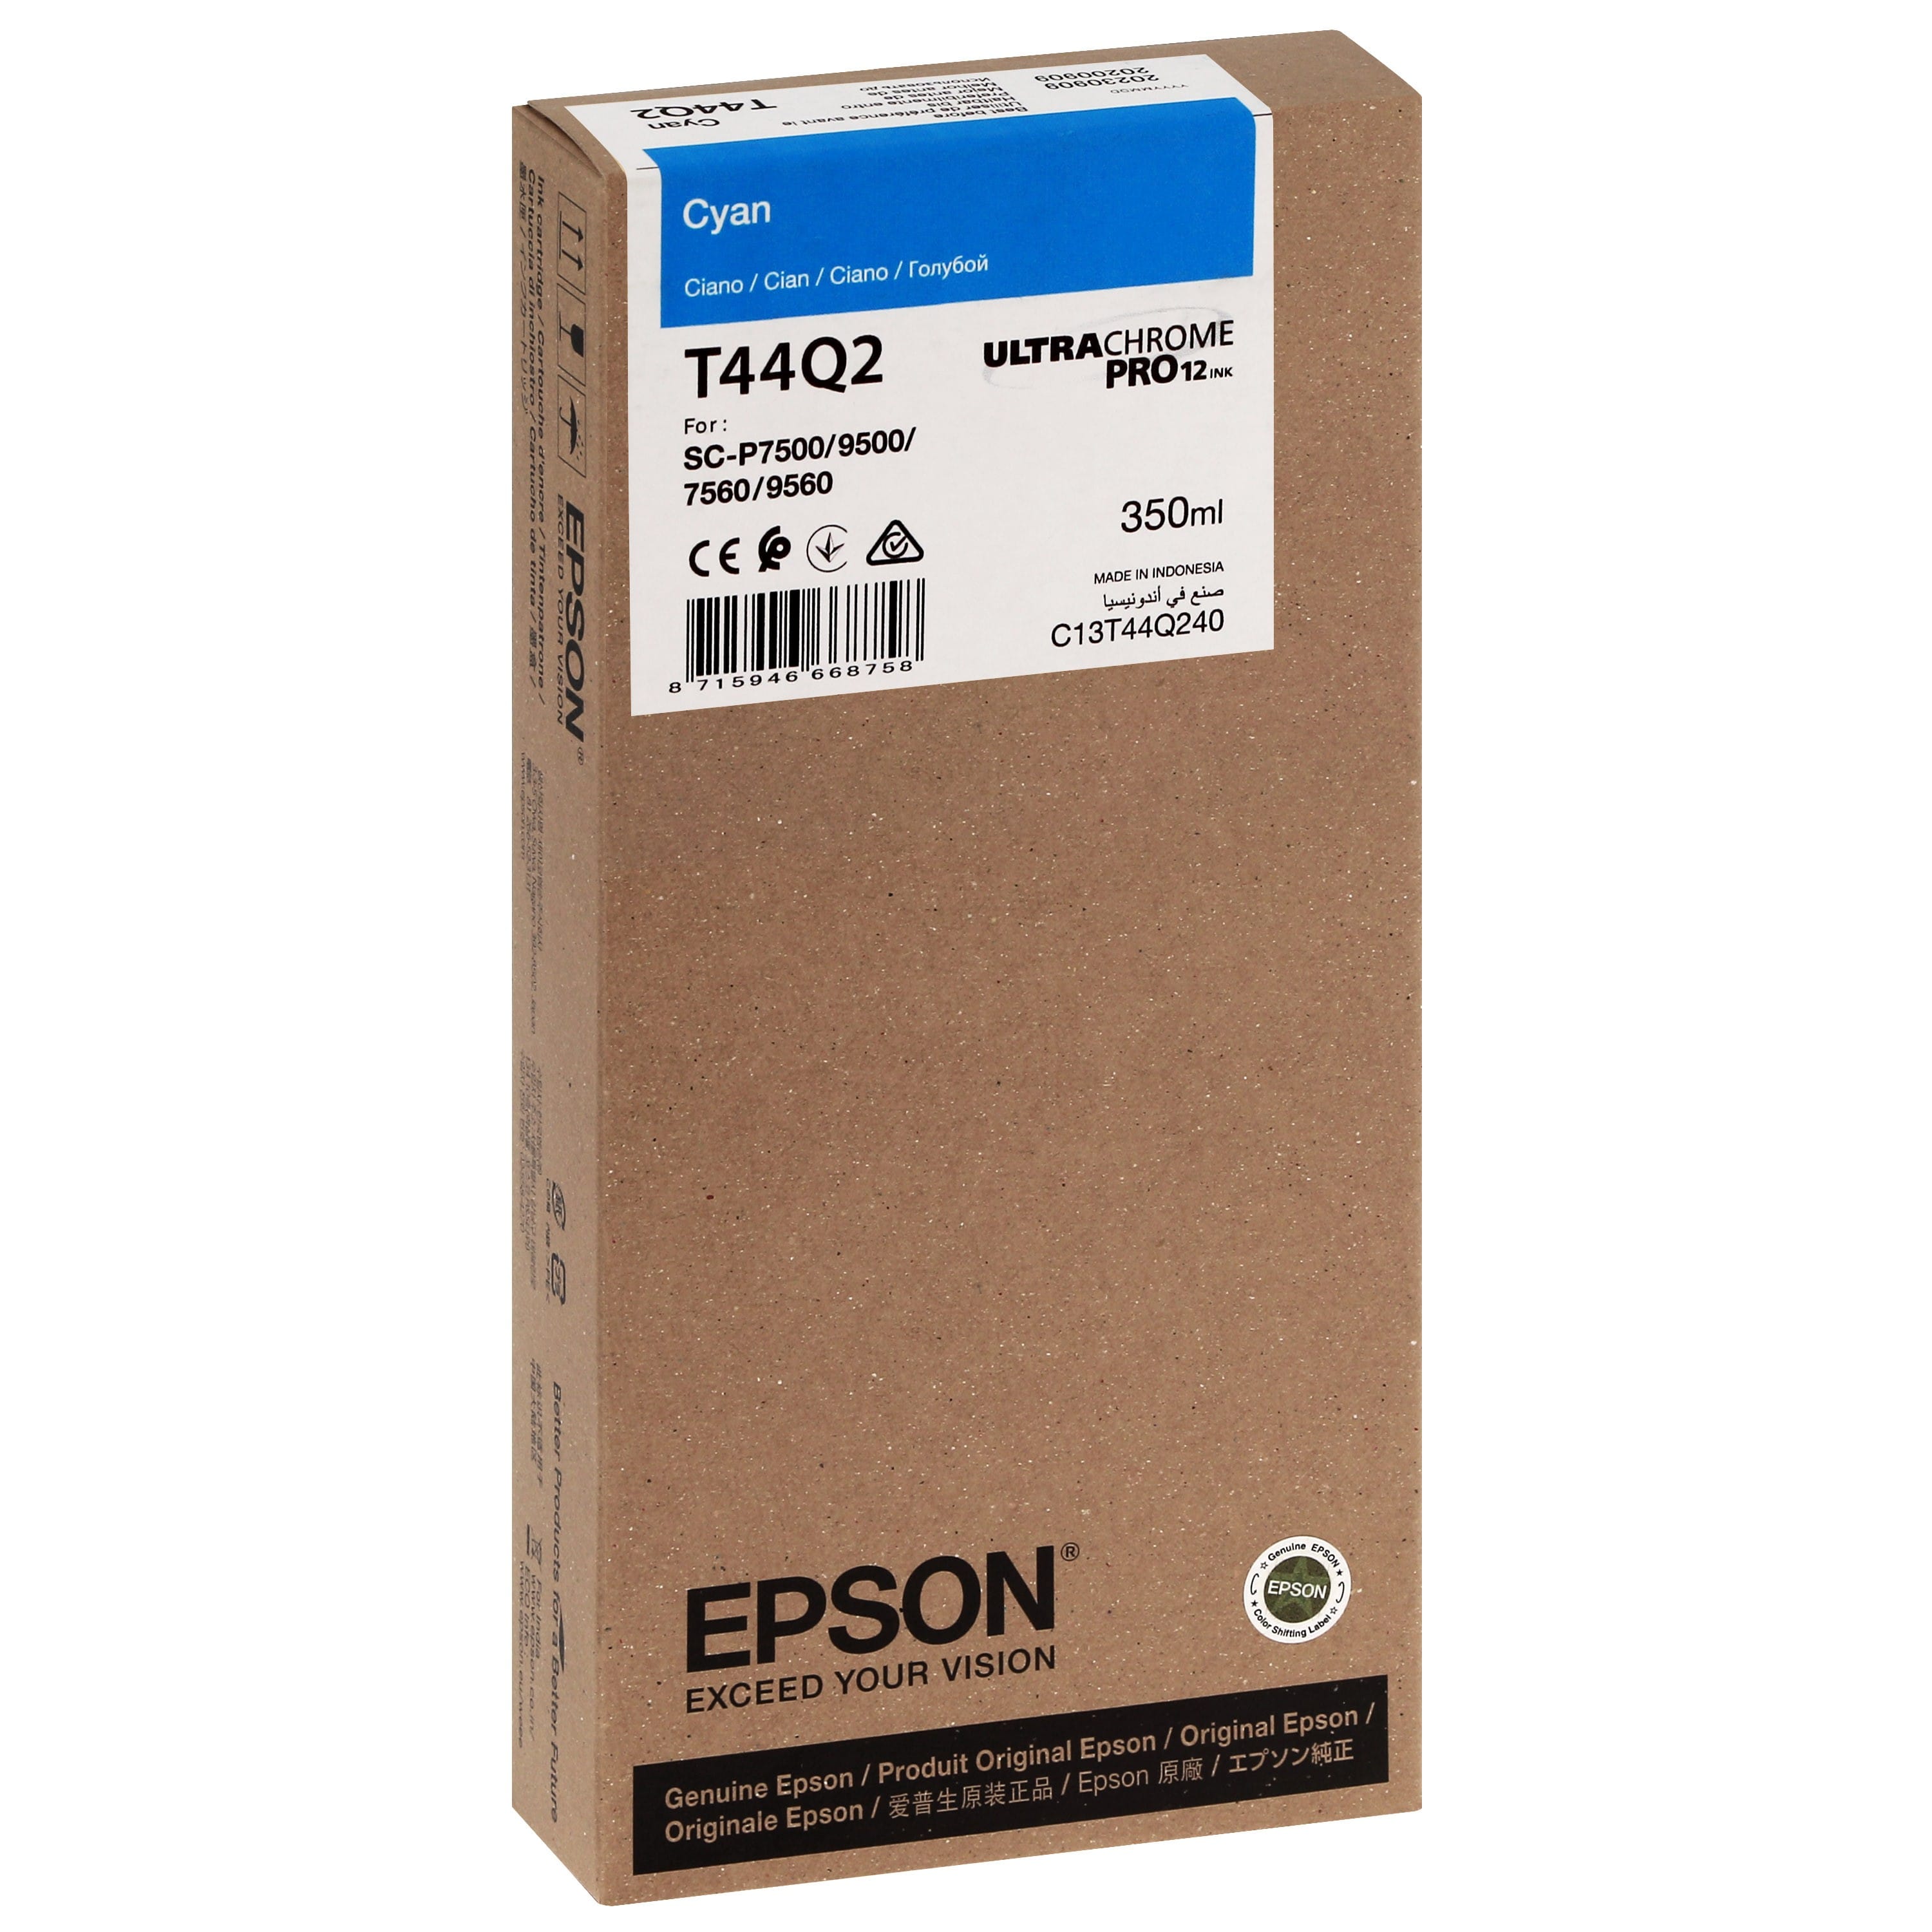 EPSON - Cartouche d'encre traceur T44Q2 Pour imprimante SC-P7500/9500 UltraChrome PRO Cyan - 350ml